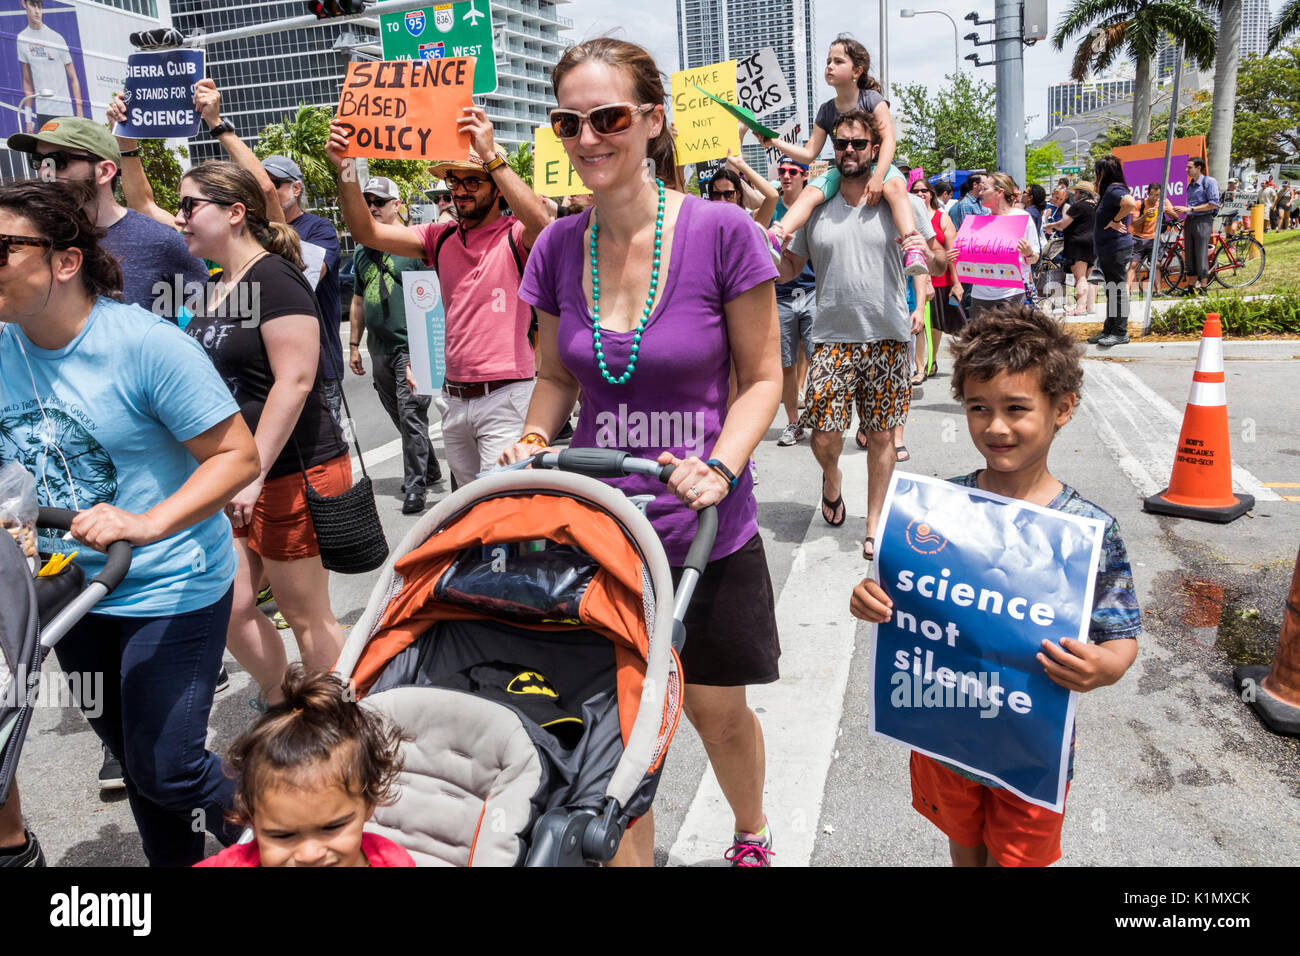 Miami Florida,Museum Park,March for Science,Protest,rallye,panneau,protester,marching,panneaux,affiches,familles parents parents enfants, garçons garçons Banque D'Images